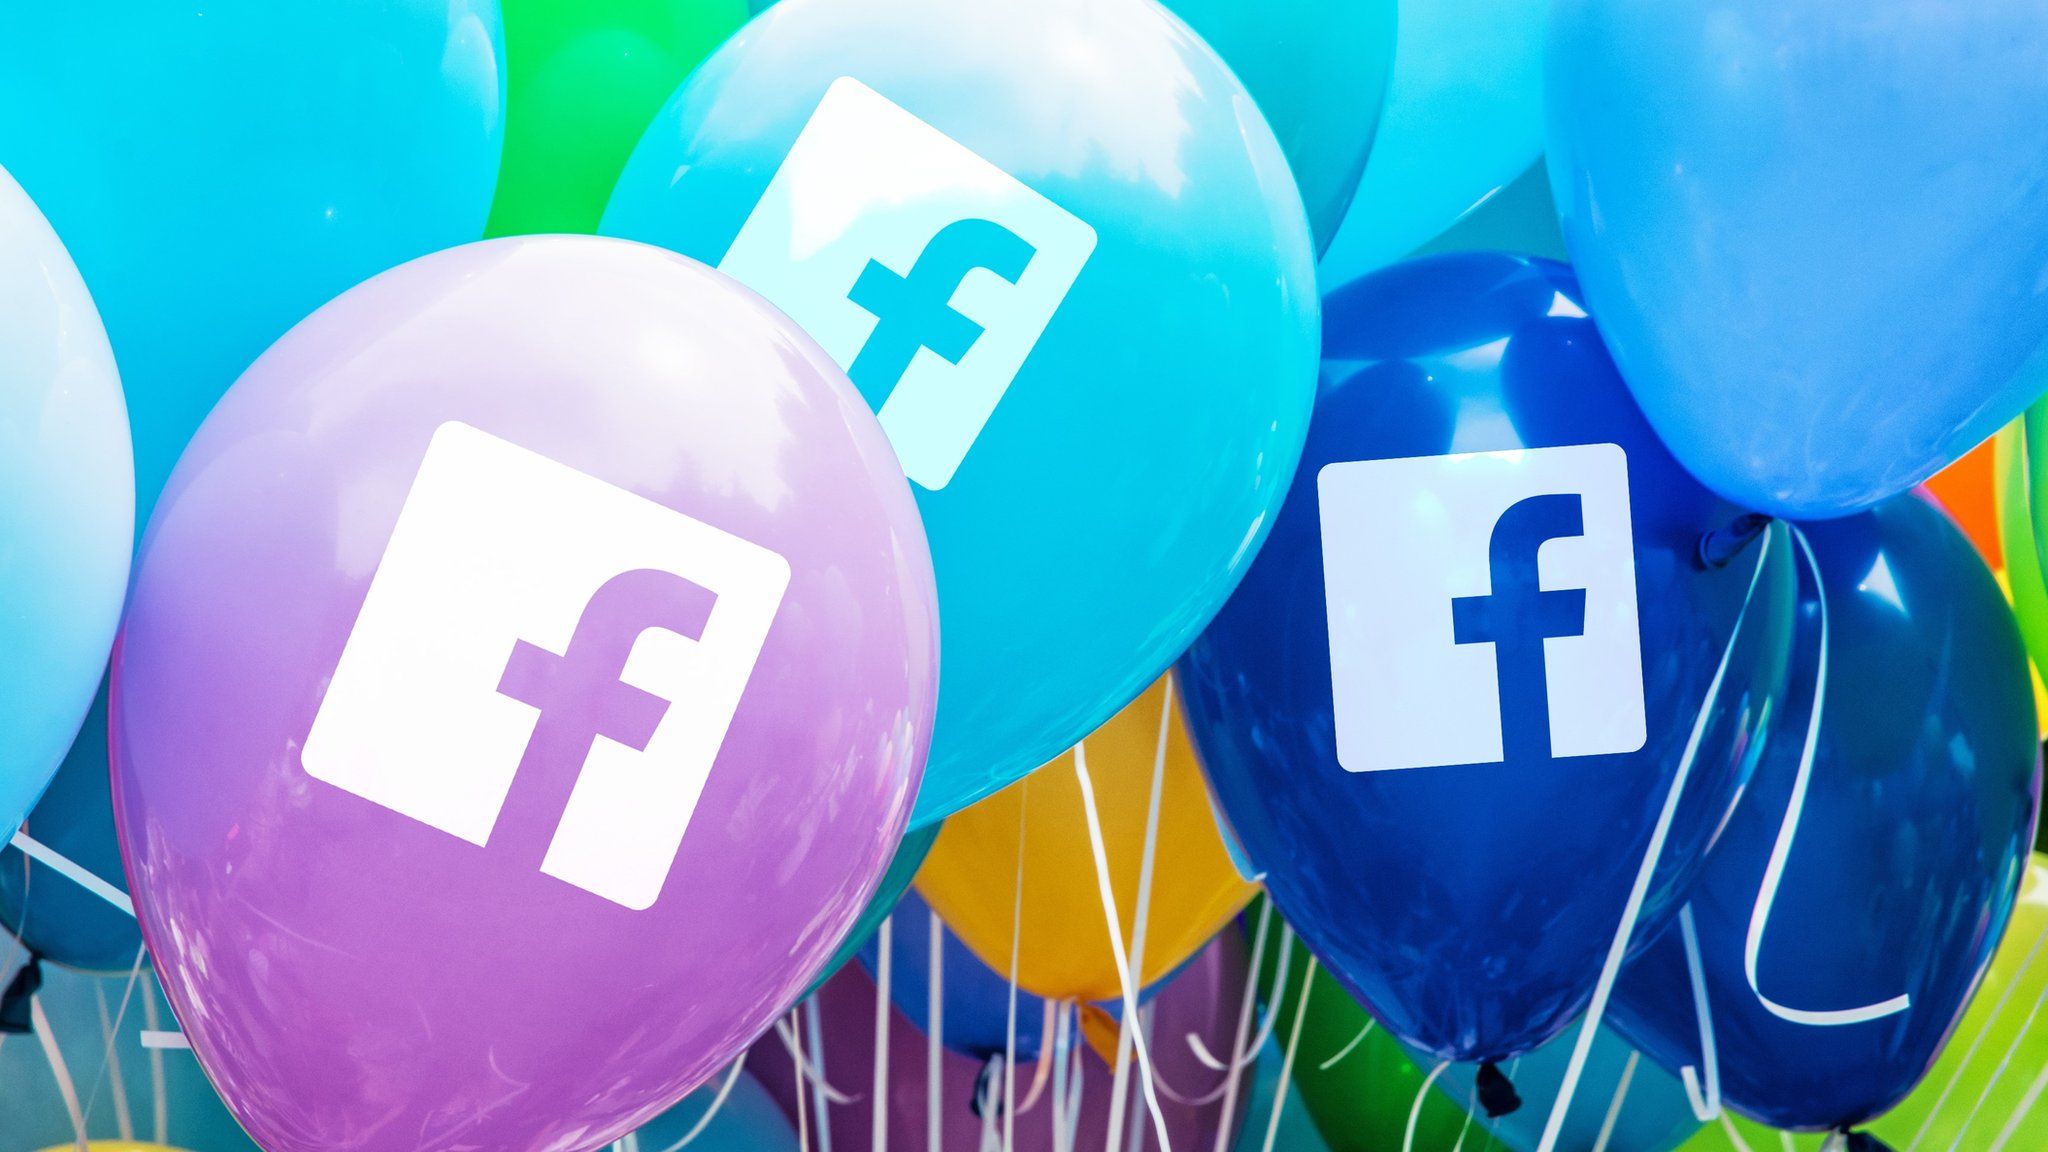 Facebook logo on balloons